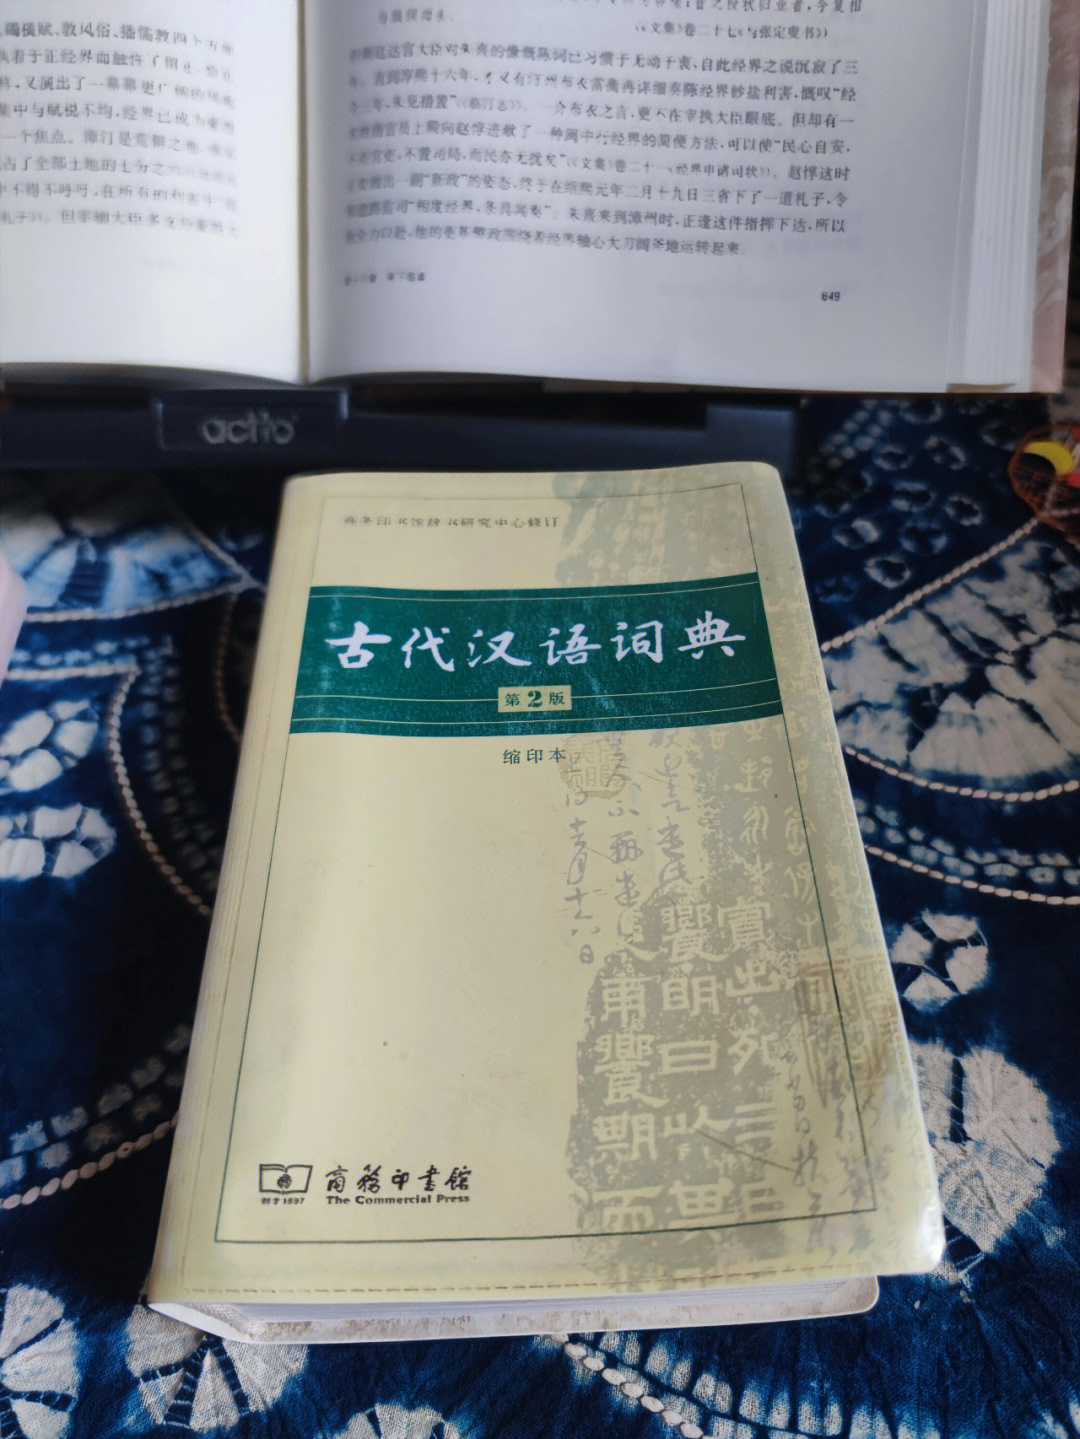 古汉语真的很有趣,今天重新认识了两个词语